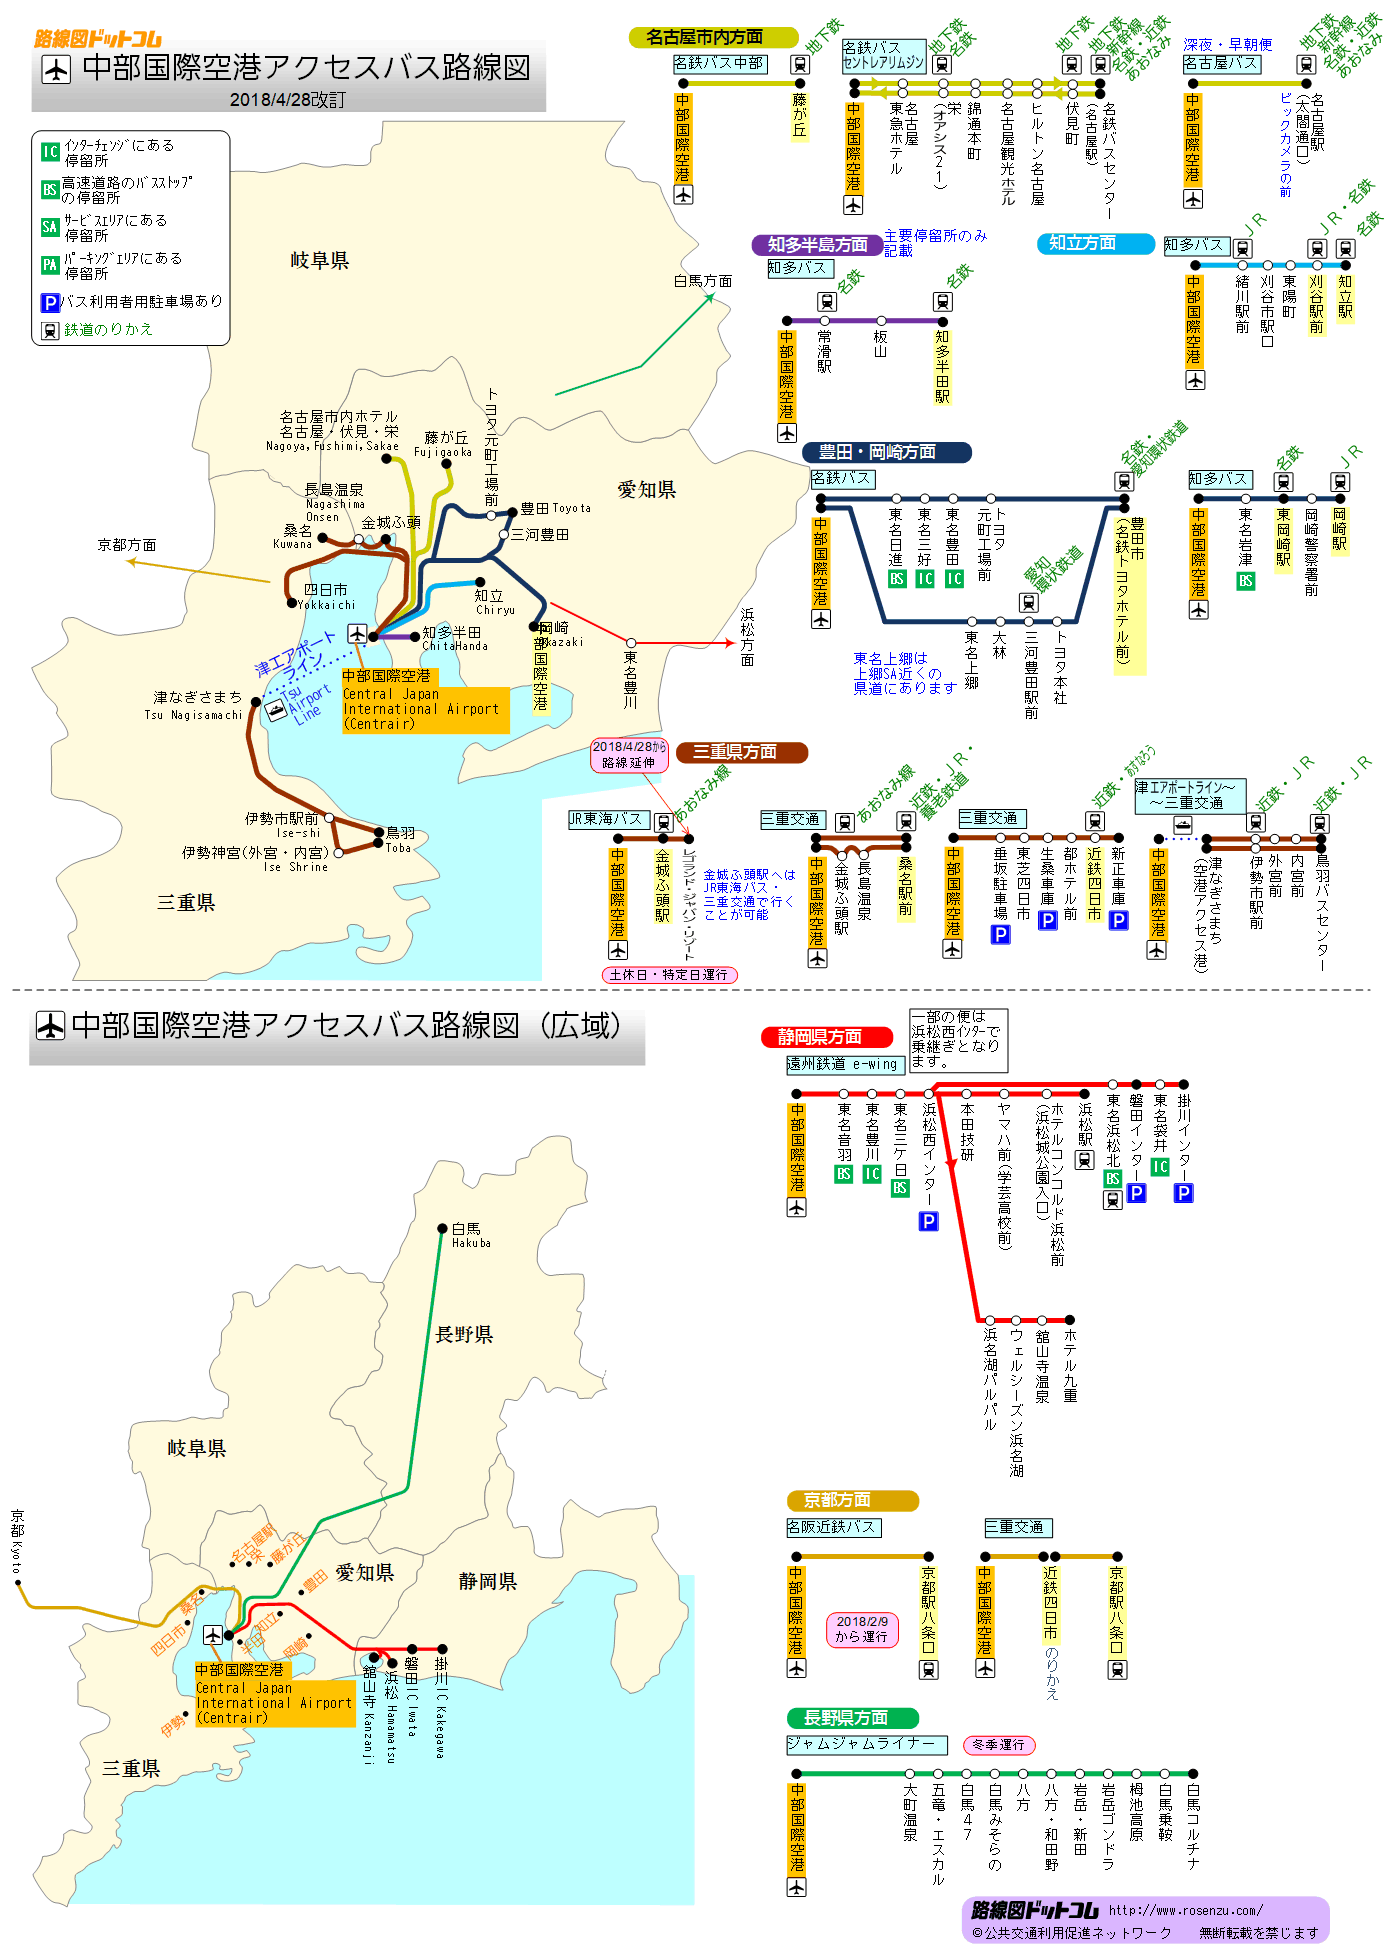 中部国際空港アクセス路線図